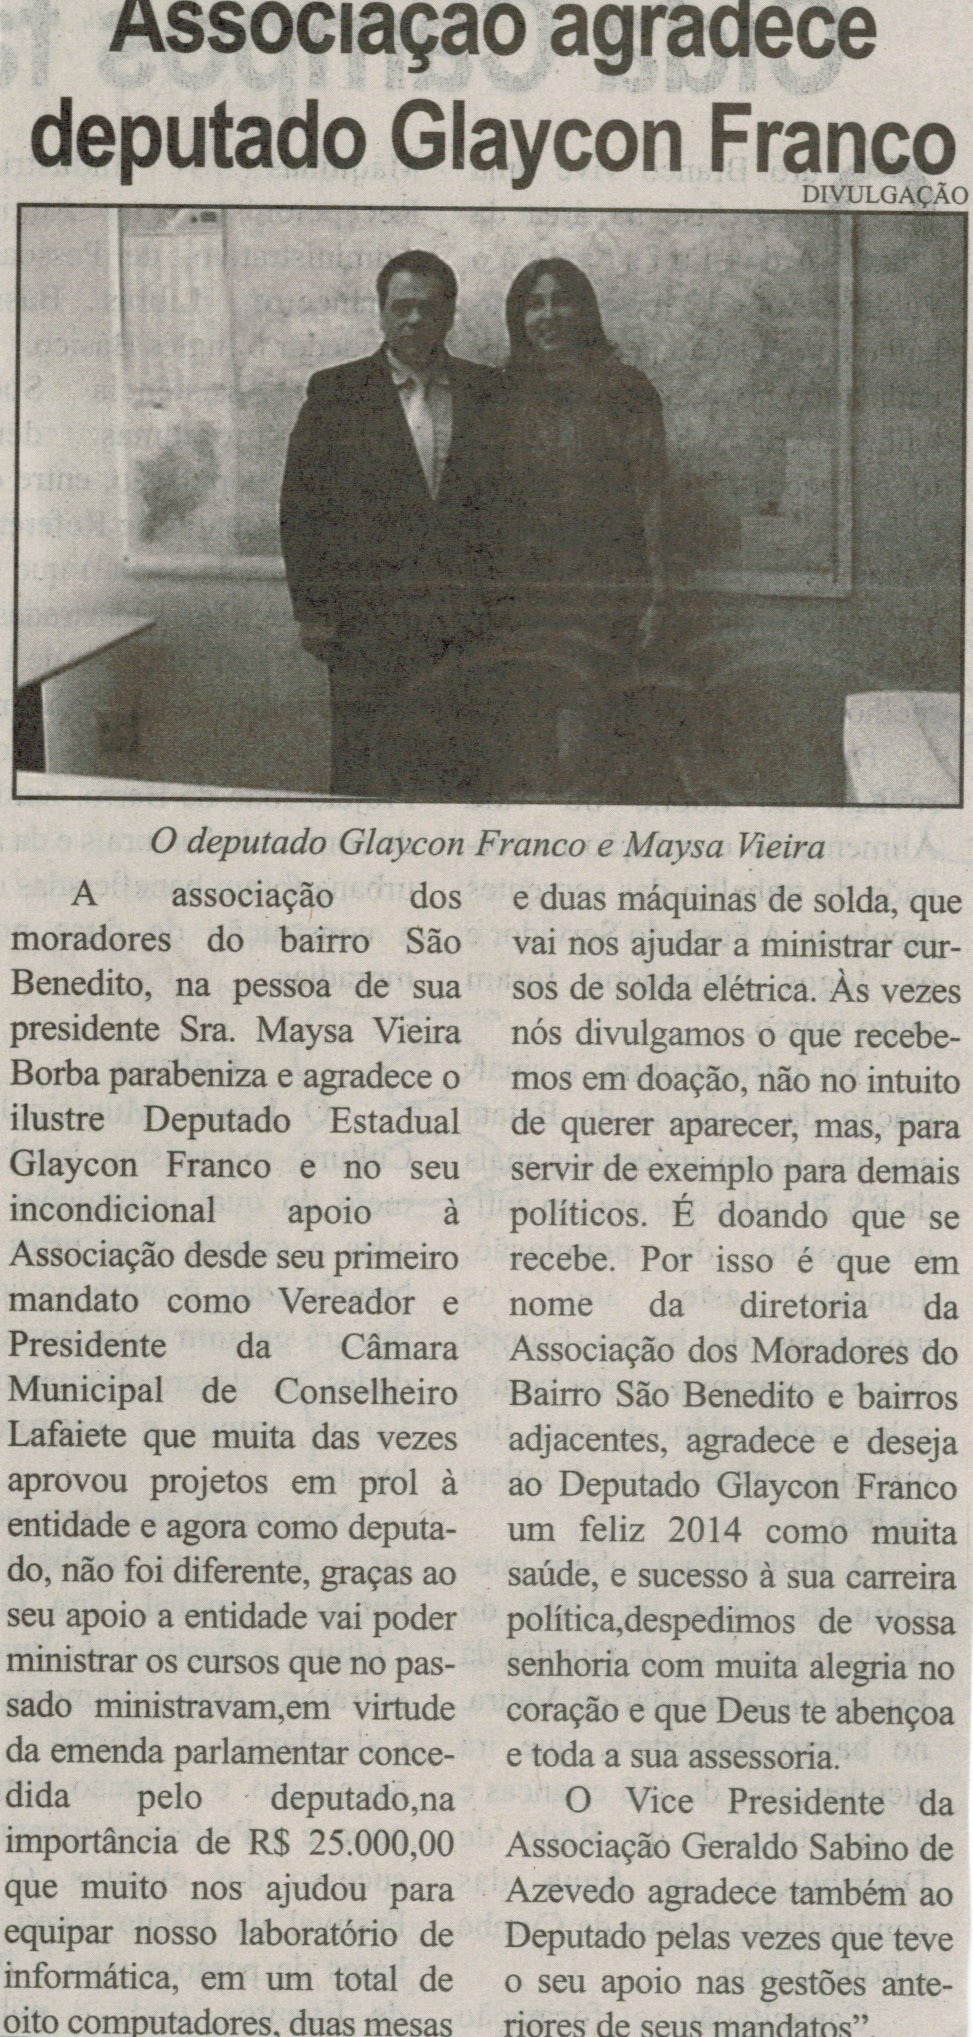 Associação agradece deputado Glaycon Franco. Correio de Minas, Conselheiro Lafaiete, 16 jan. 2014, p. 5.